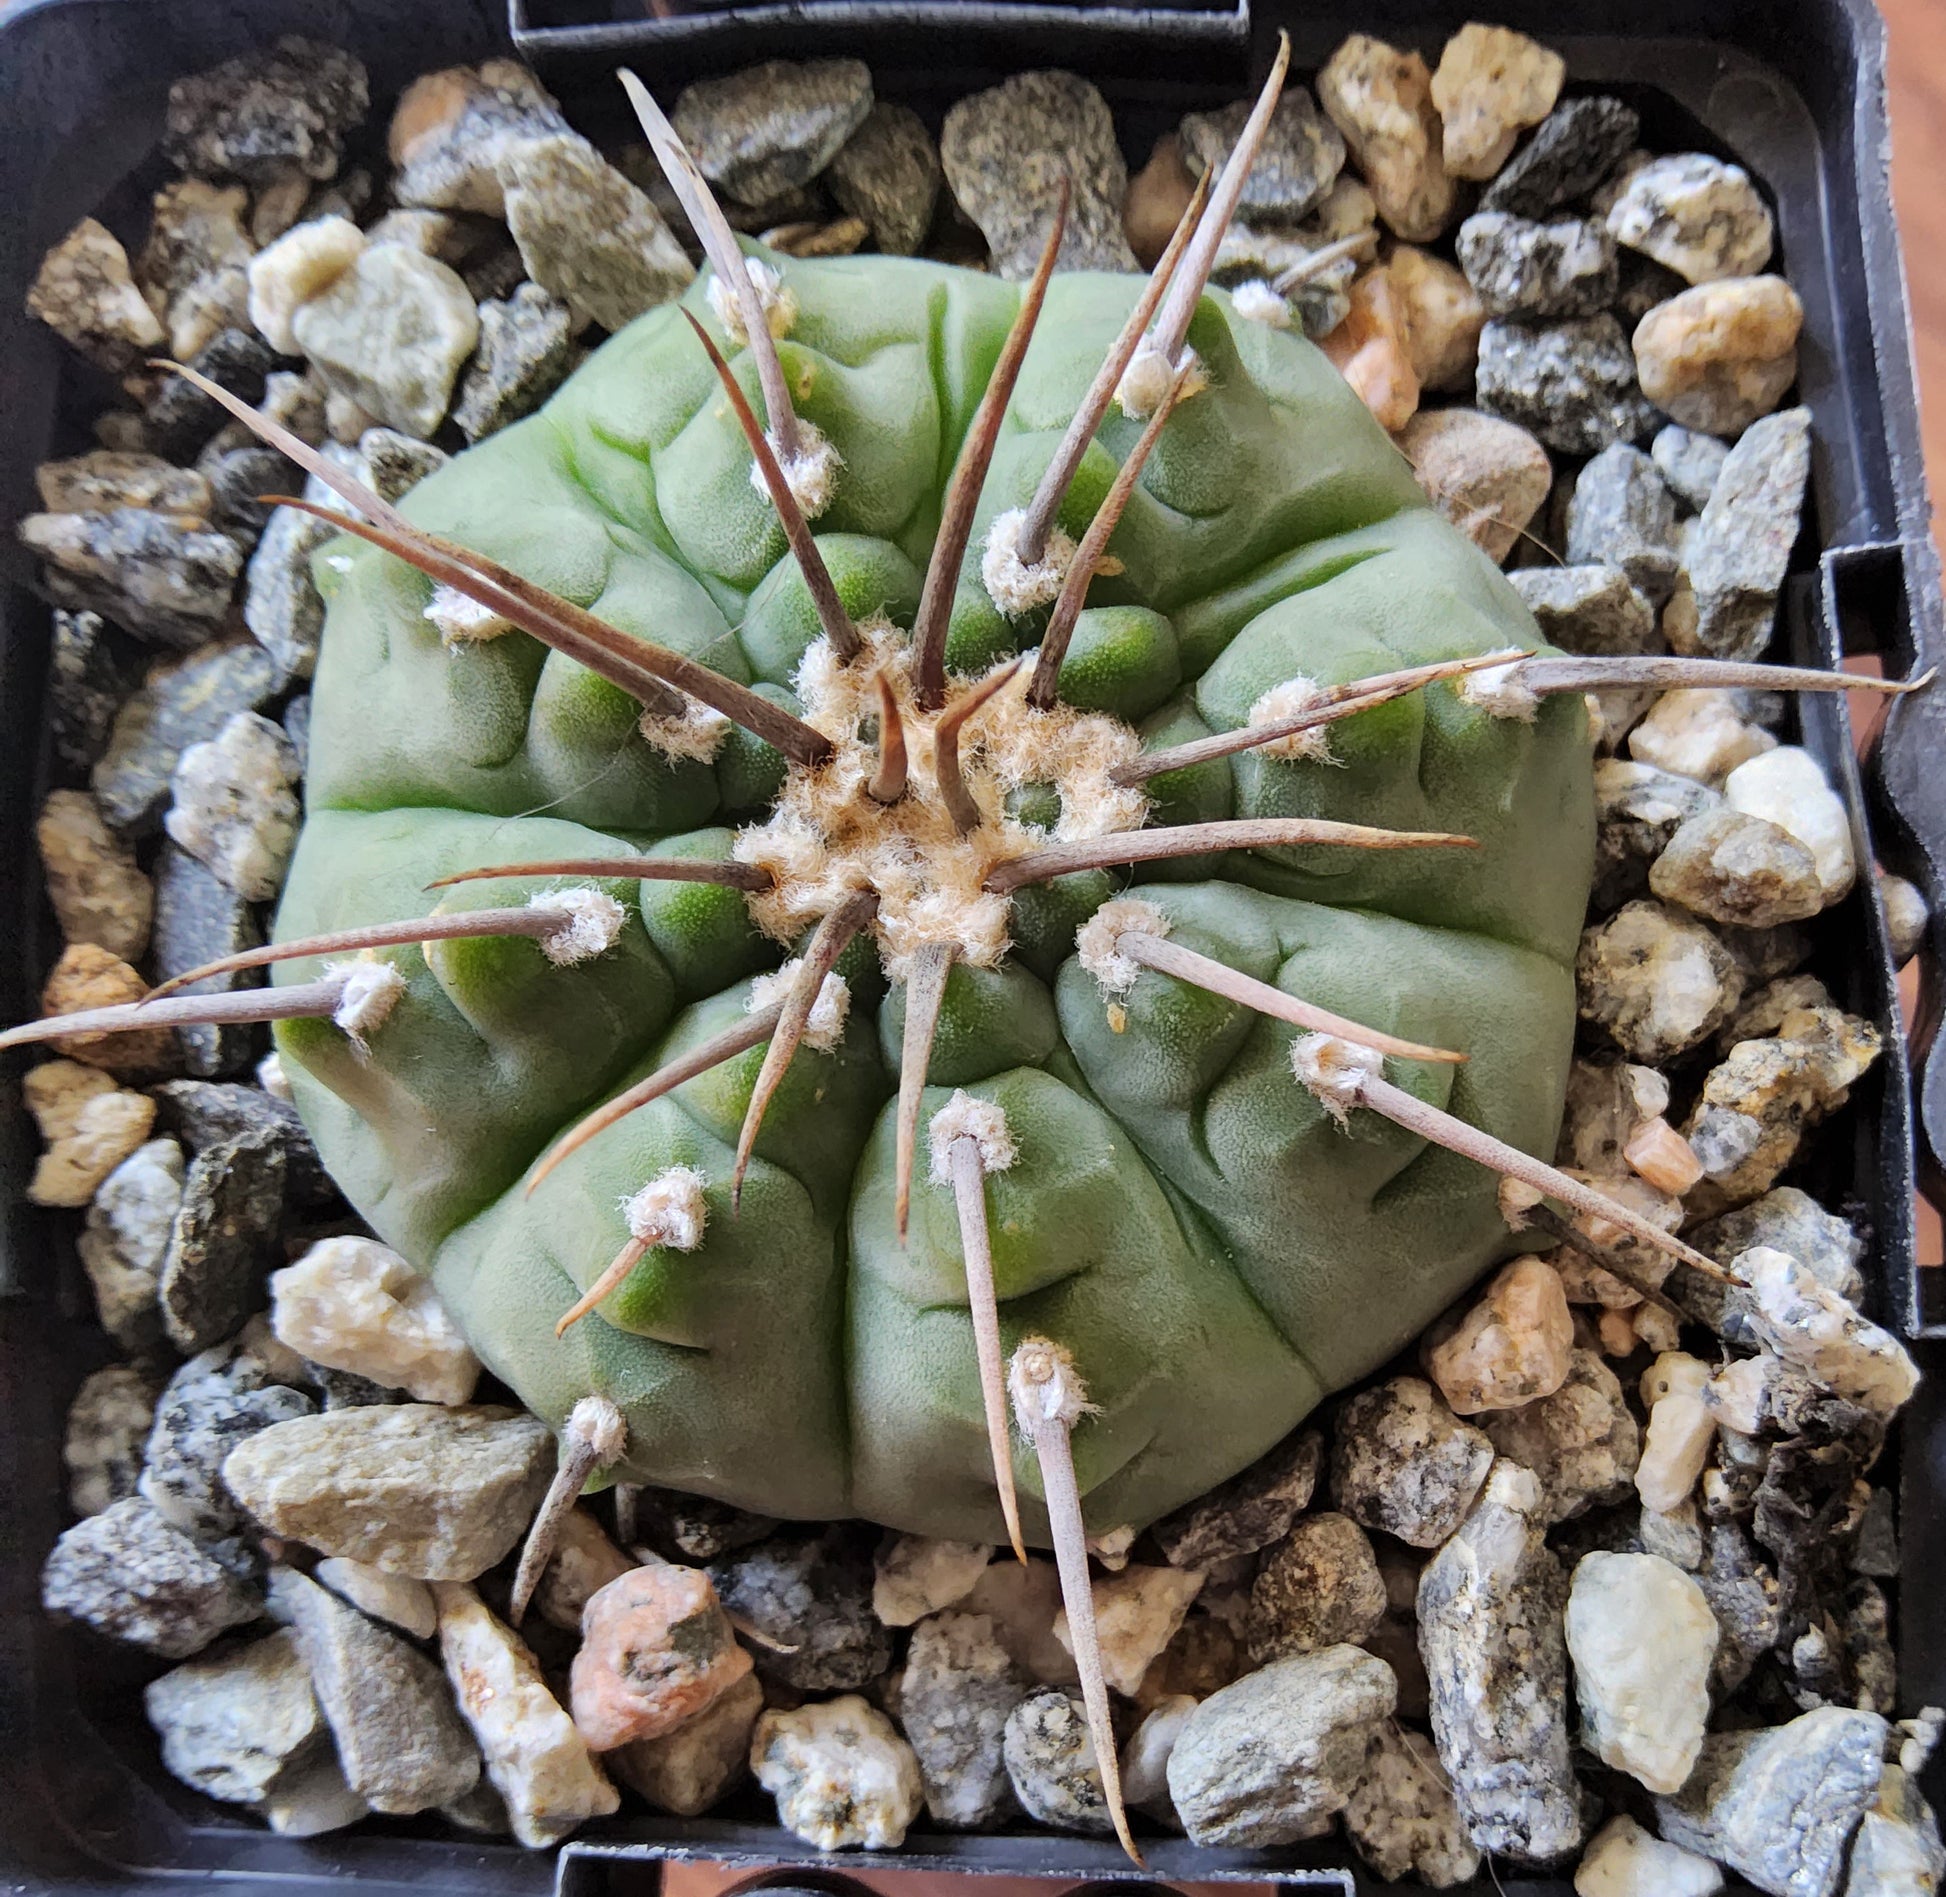 Gymnocalycium vatteri var. paucispinum Live Cactus Growing in 4 Inch